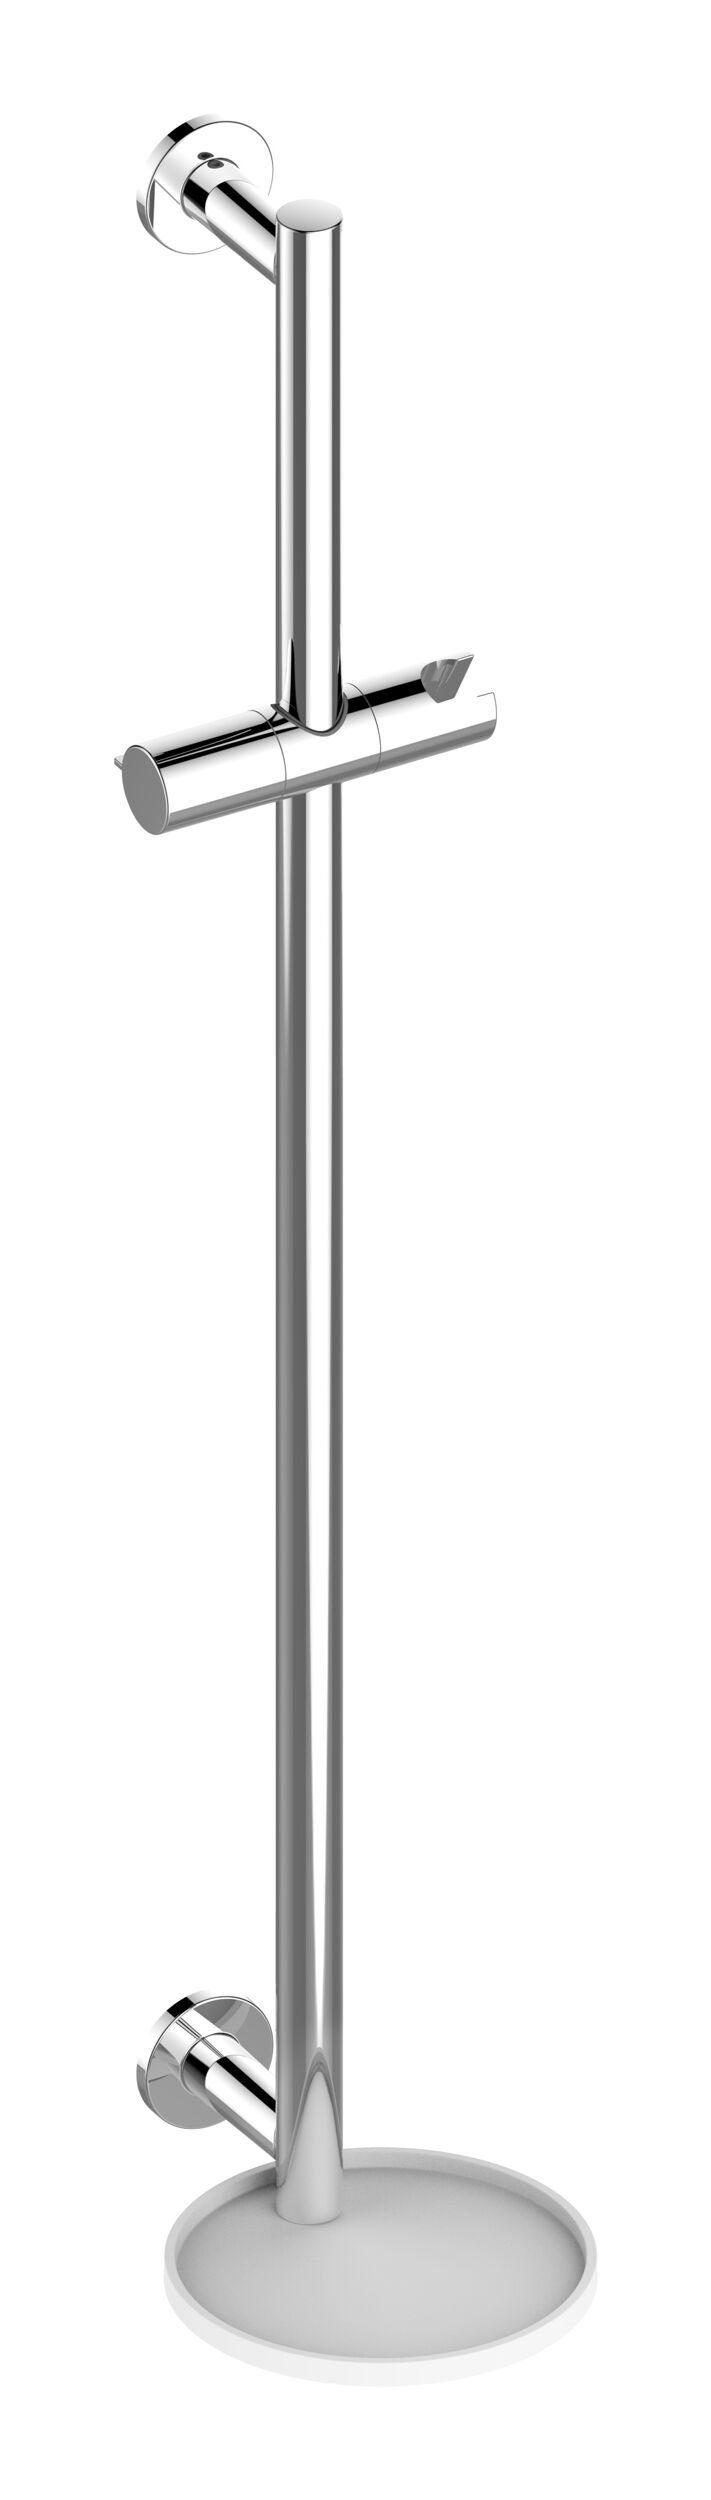 Keuco Duschstange IXMO, Brausestange mit Ablage mit runder Rosette 855 mm - Verchromt / Weiß | Brausegarnituren